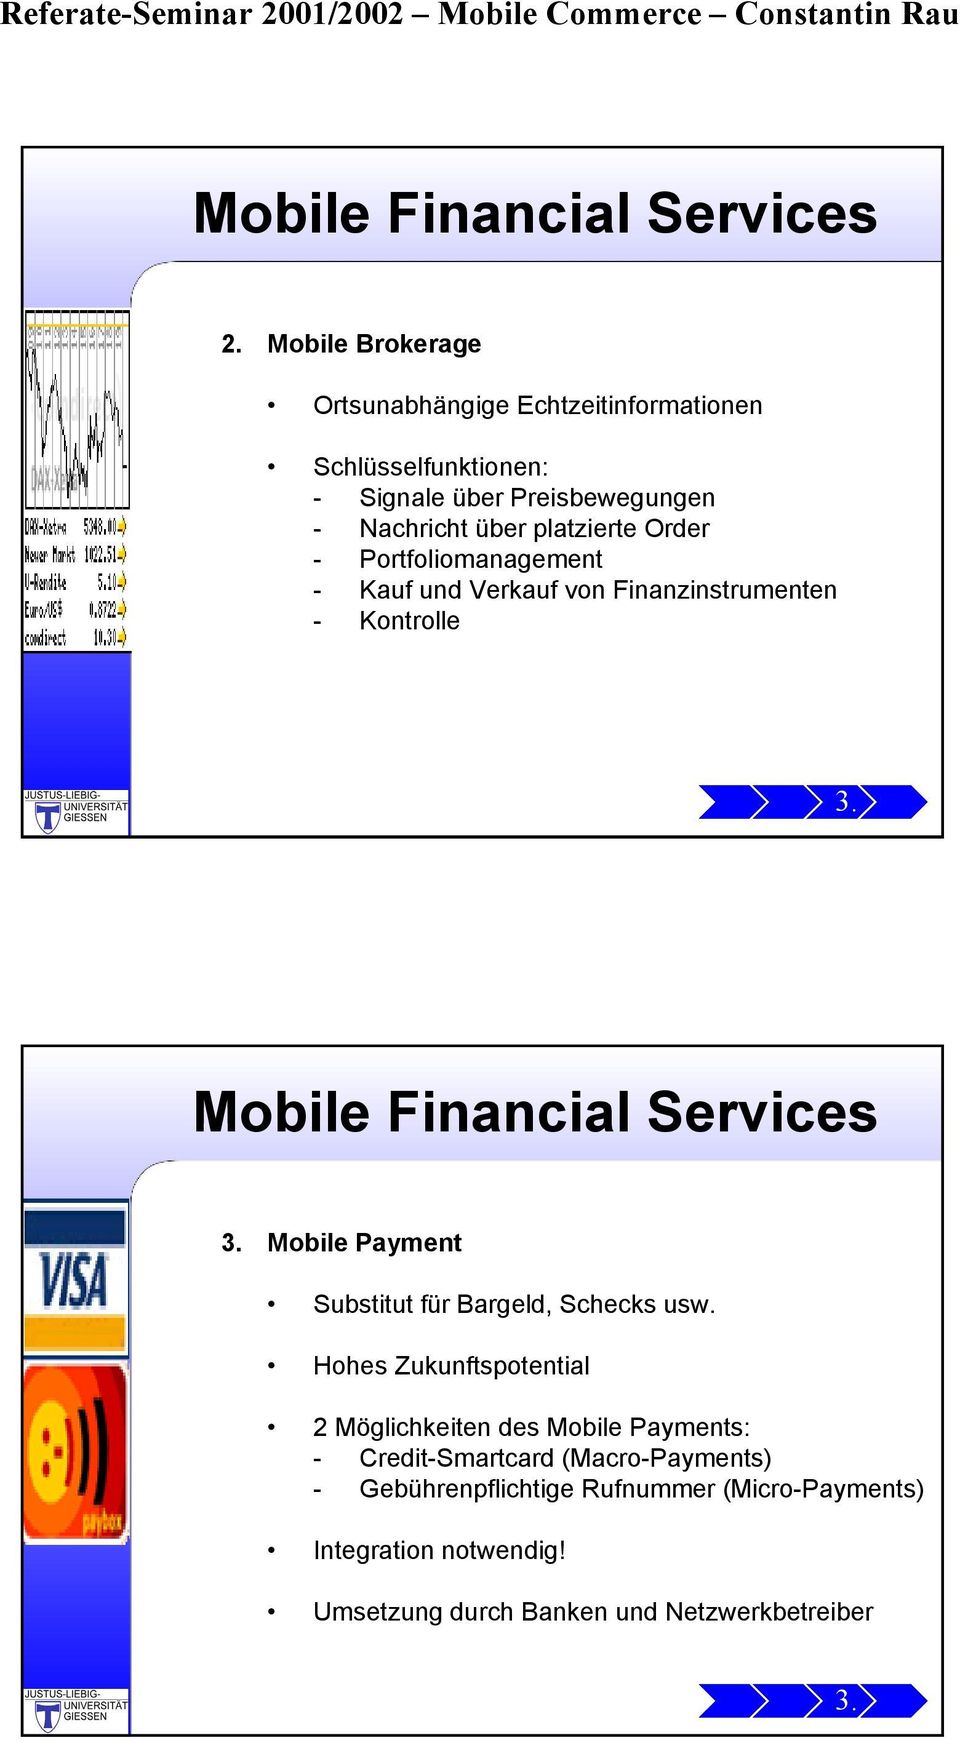 Order - Portfoliomanagement - Kauf und Verkauf von Finanzinstrumenten - Kontrolle 3. Mobile Financial Services 3.